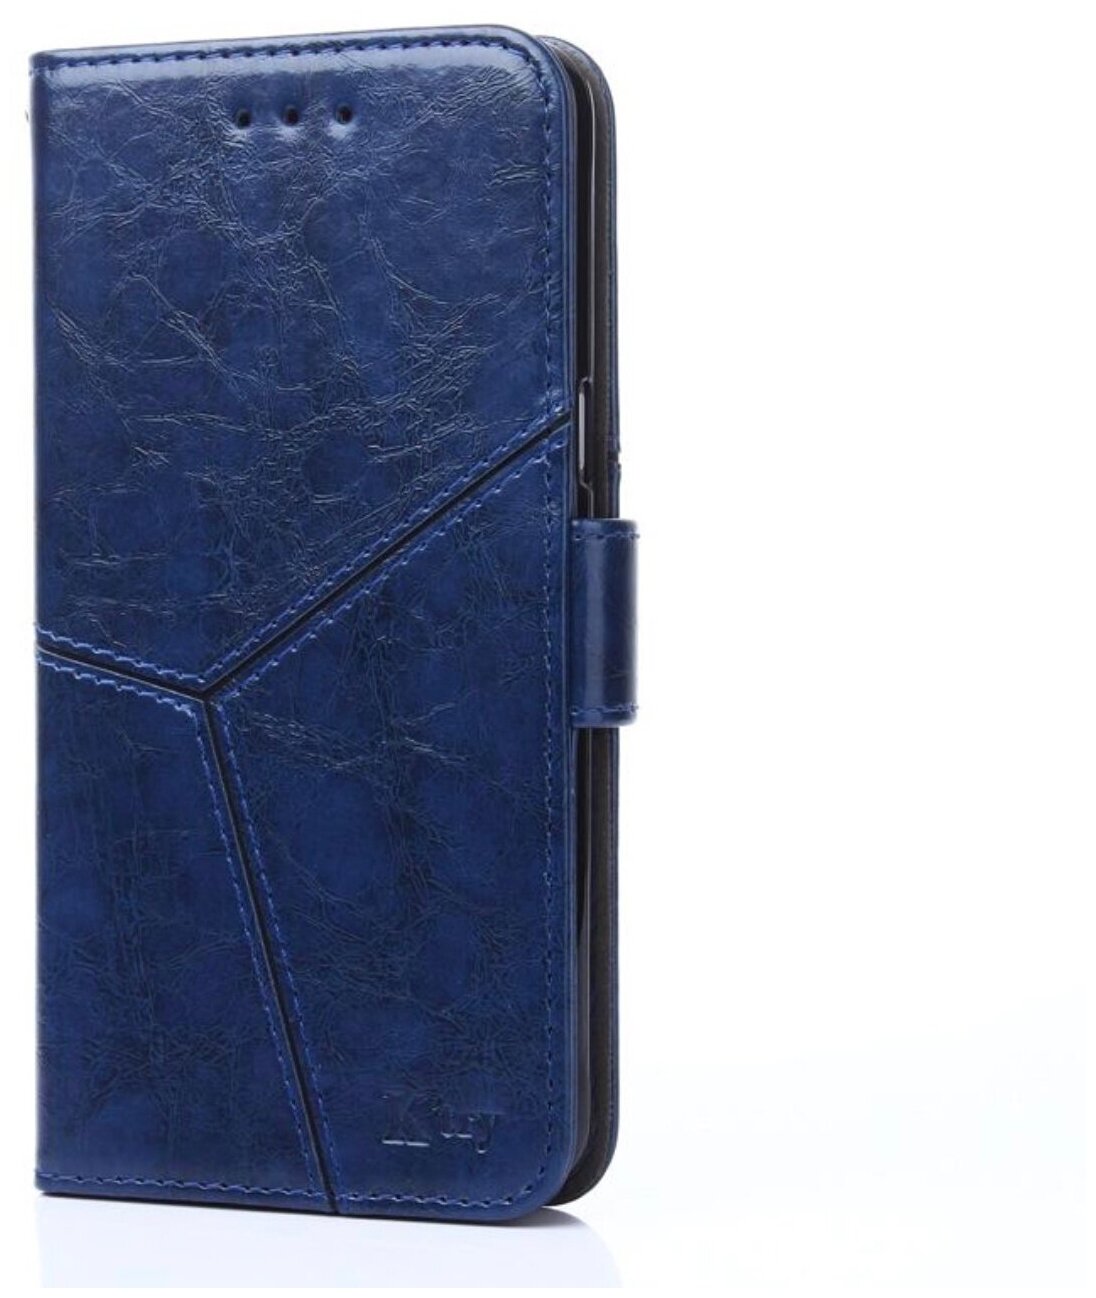 Чехол-книжка Чехол. ру для Samsung Galaxy A10 SM-A105F (2019) прошитый по контуру с необычным геометрическим швом синий